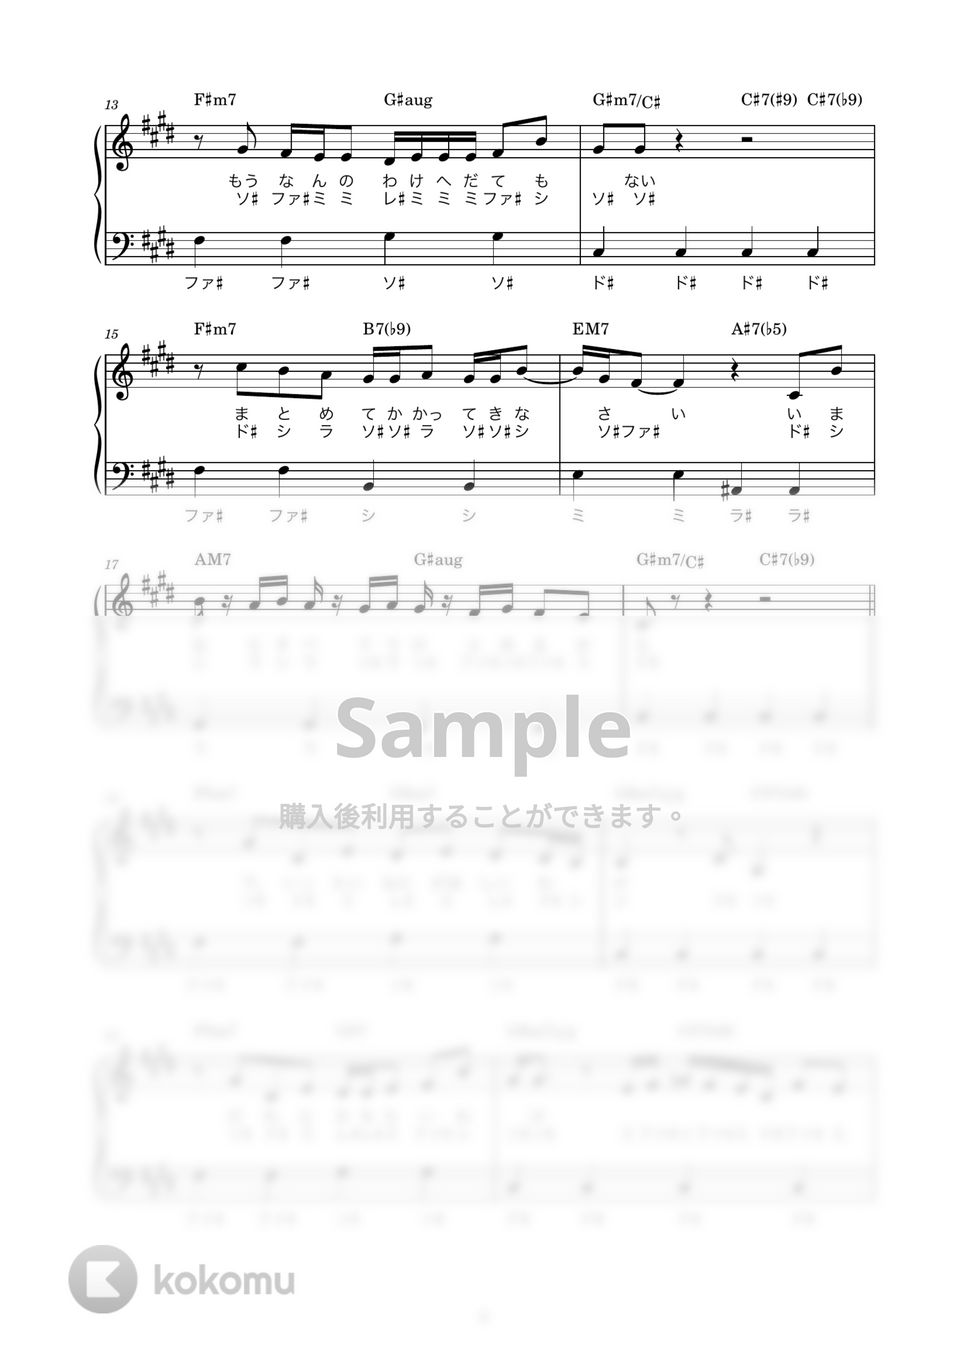 藤井風 - まつり (かんたん / 歌詞付き / ドレミ付き / 初心者) by piano.tokyo